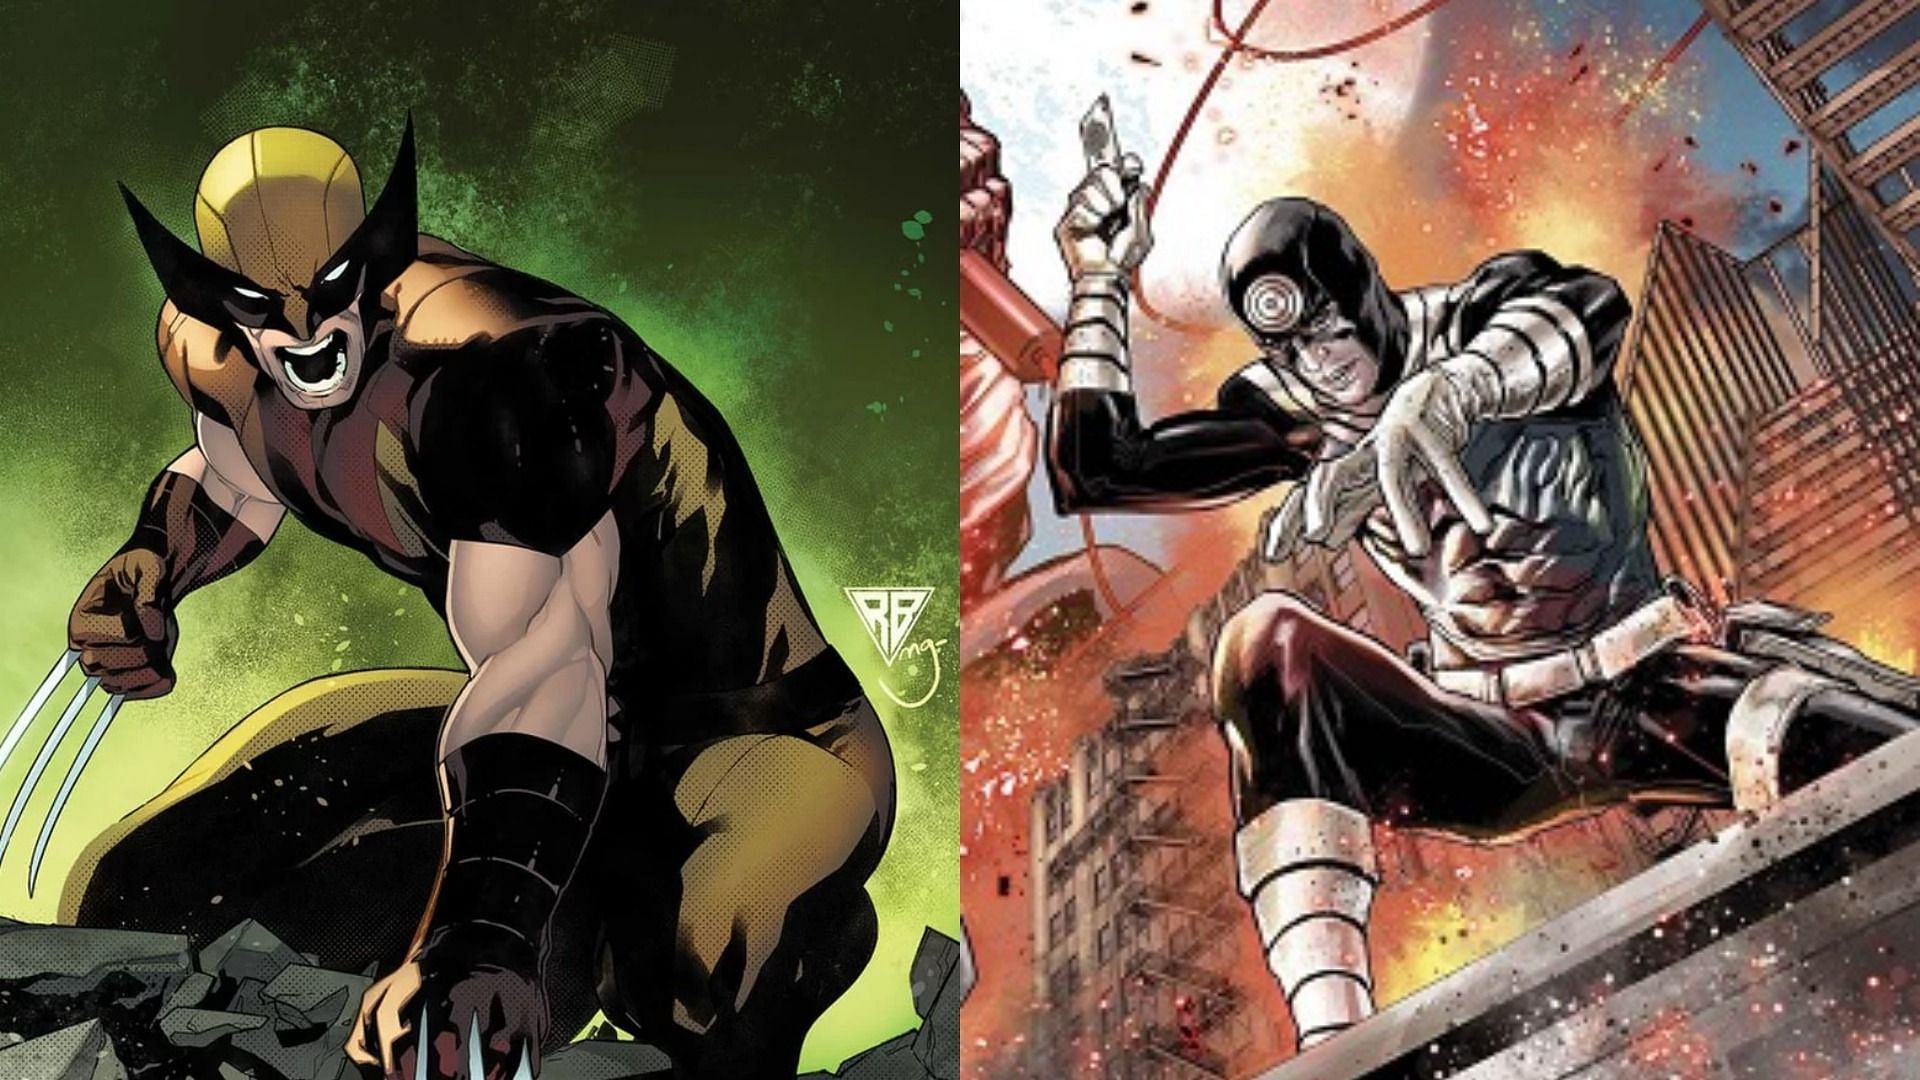 Top 5 most violent comic book characters